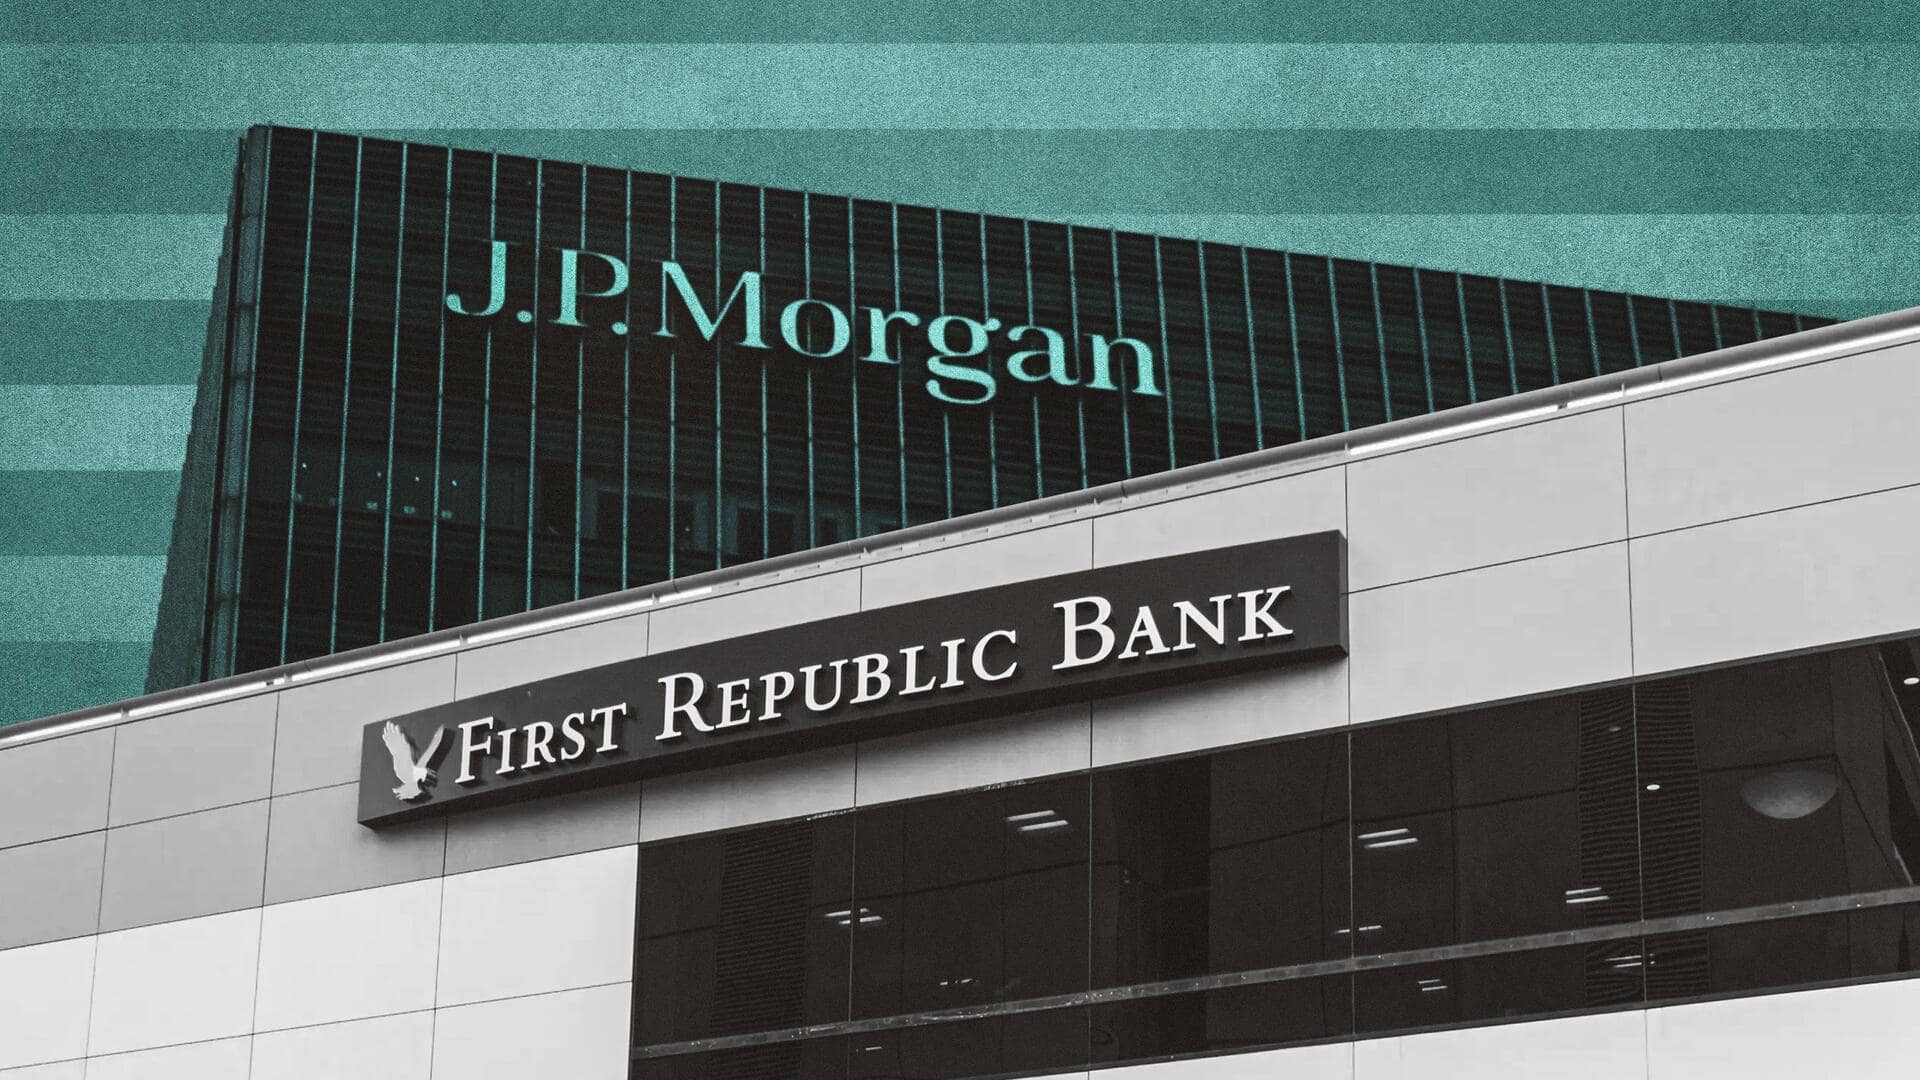 अमेरिका: सरकार ने फर्स्ट रिपब्लिक बैंक को अपने नियंत्रण में लिया, जल्द जेपी मॉर्गन करेगी अधिग्रहण